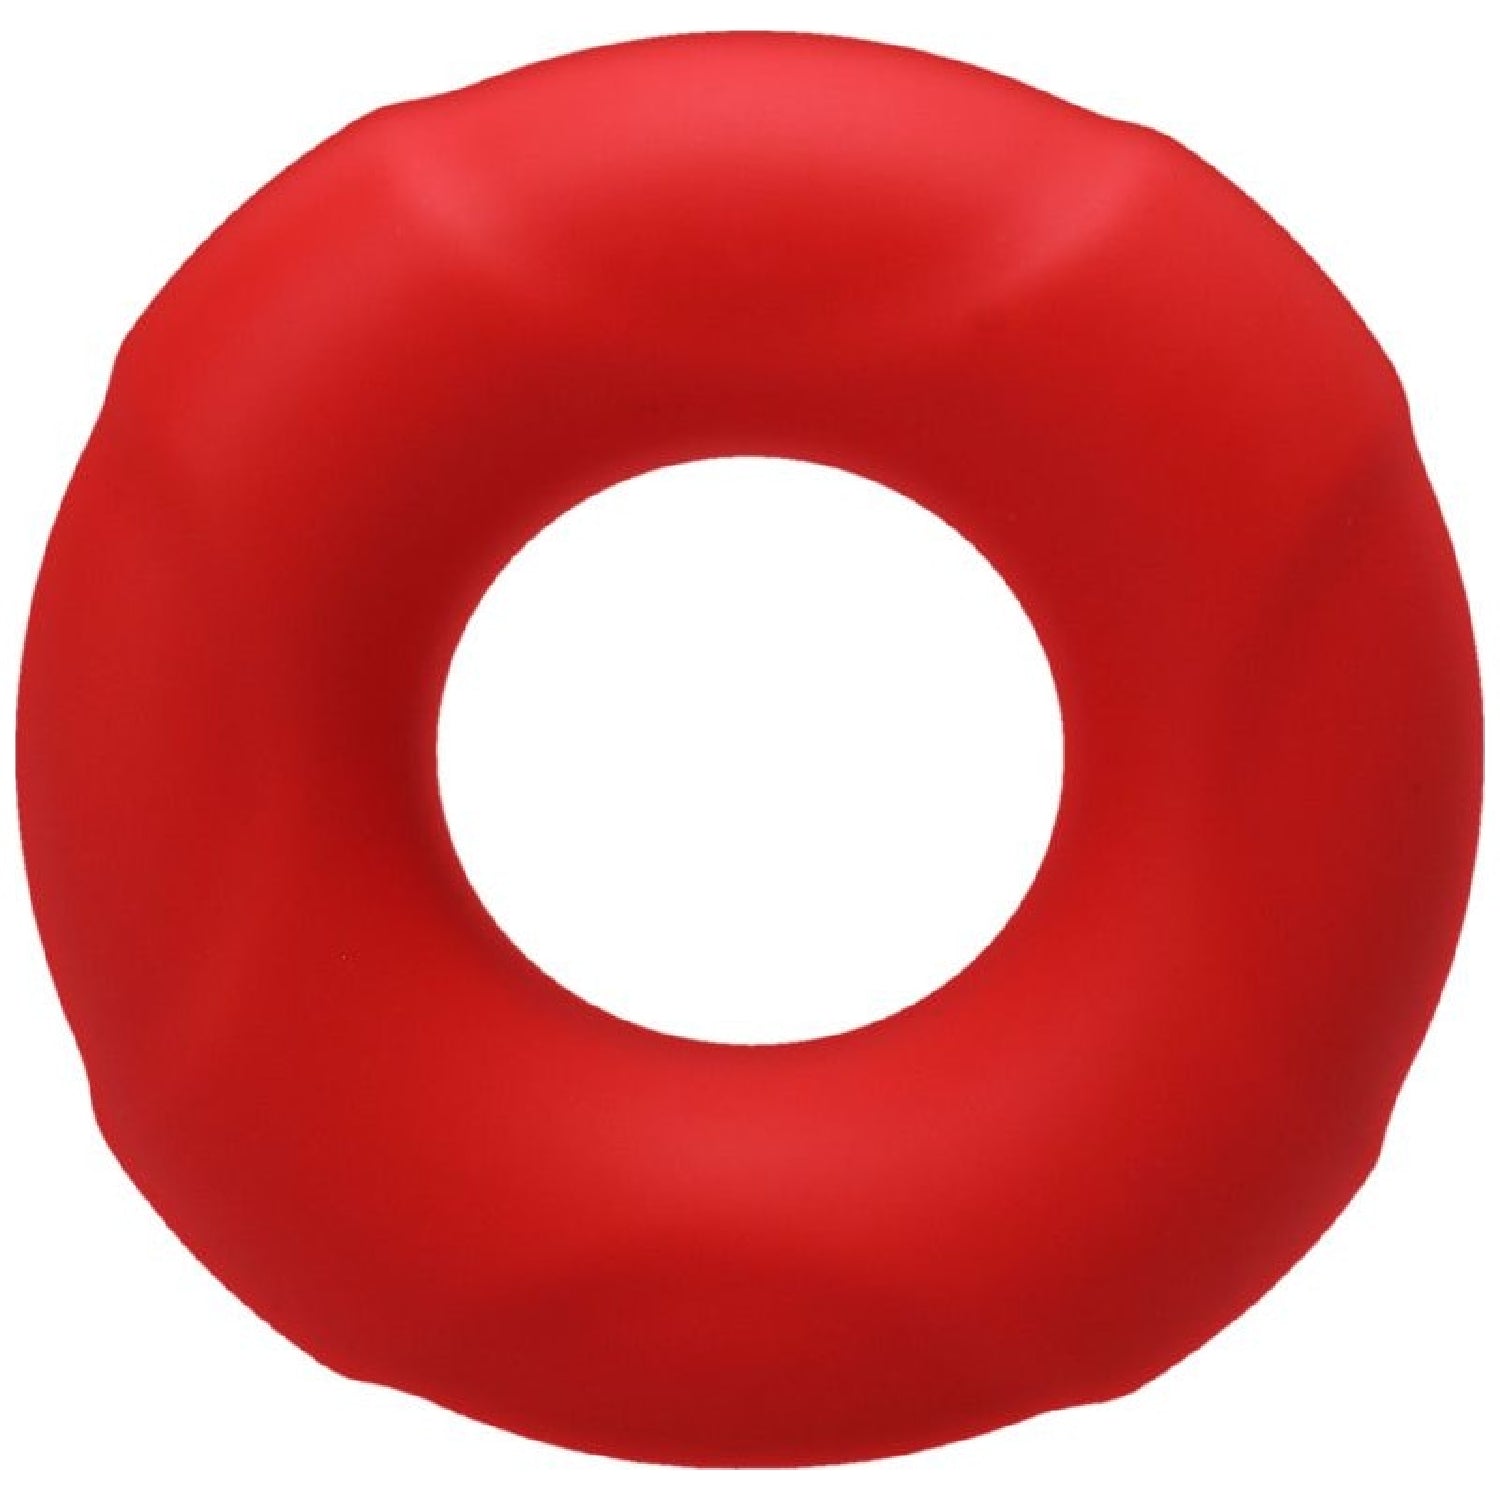 Buoy C-Ring Medium - Crimson Red